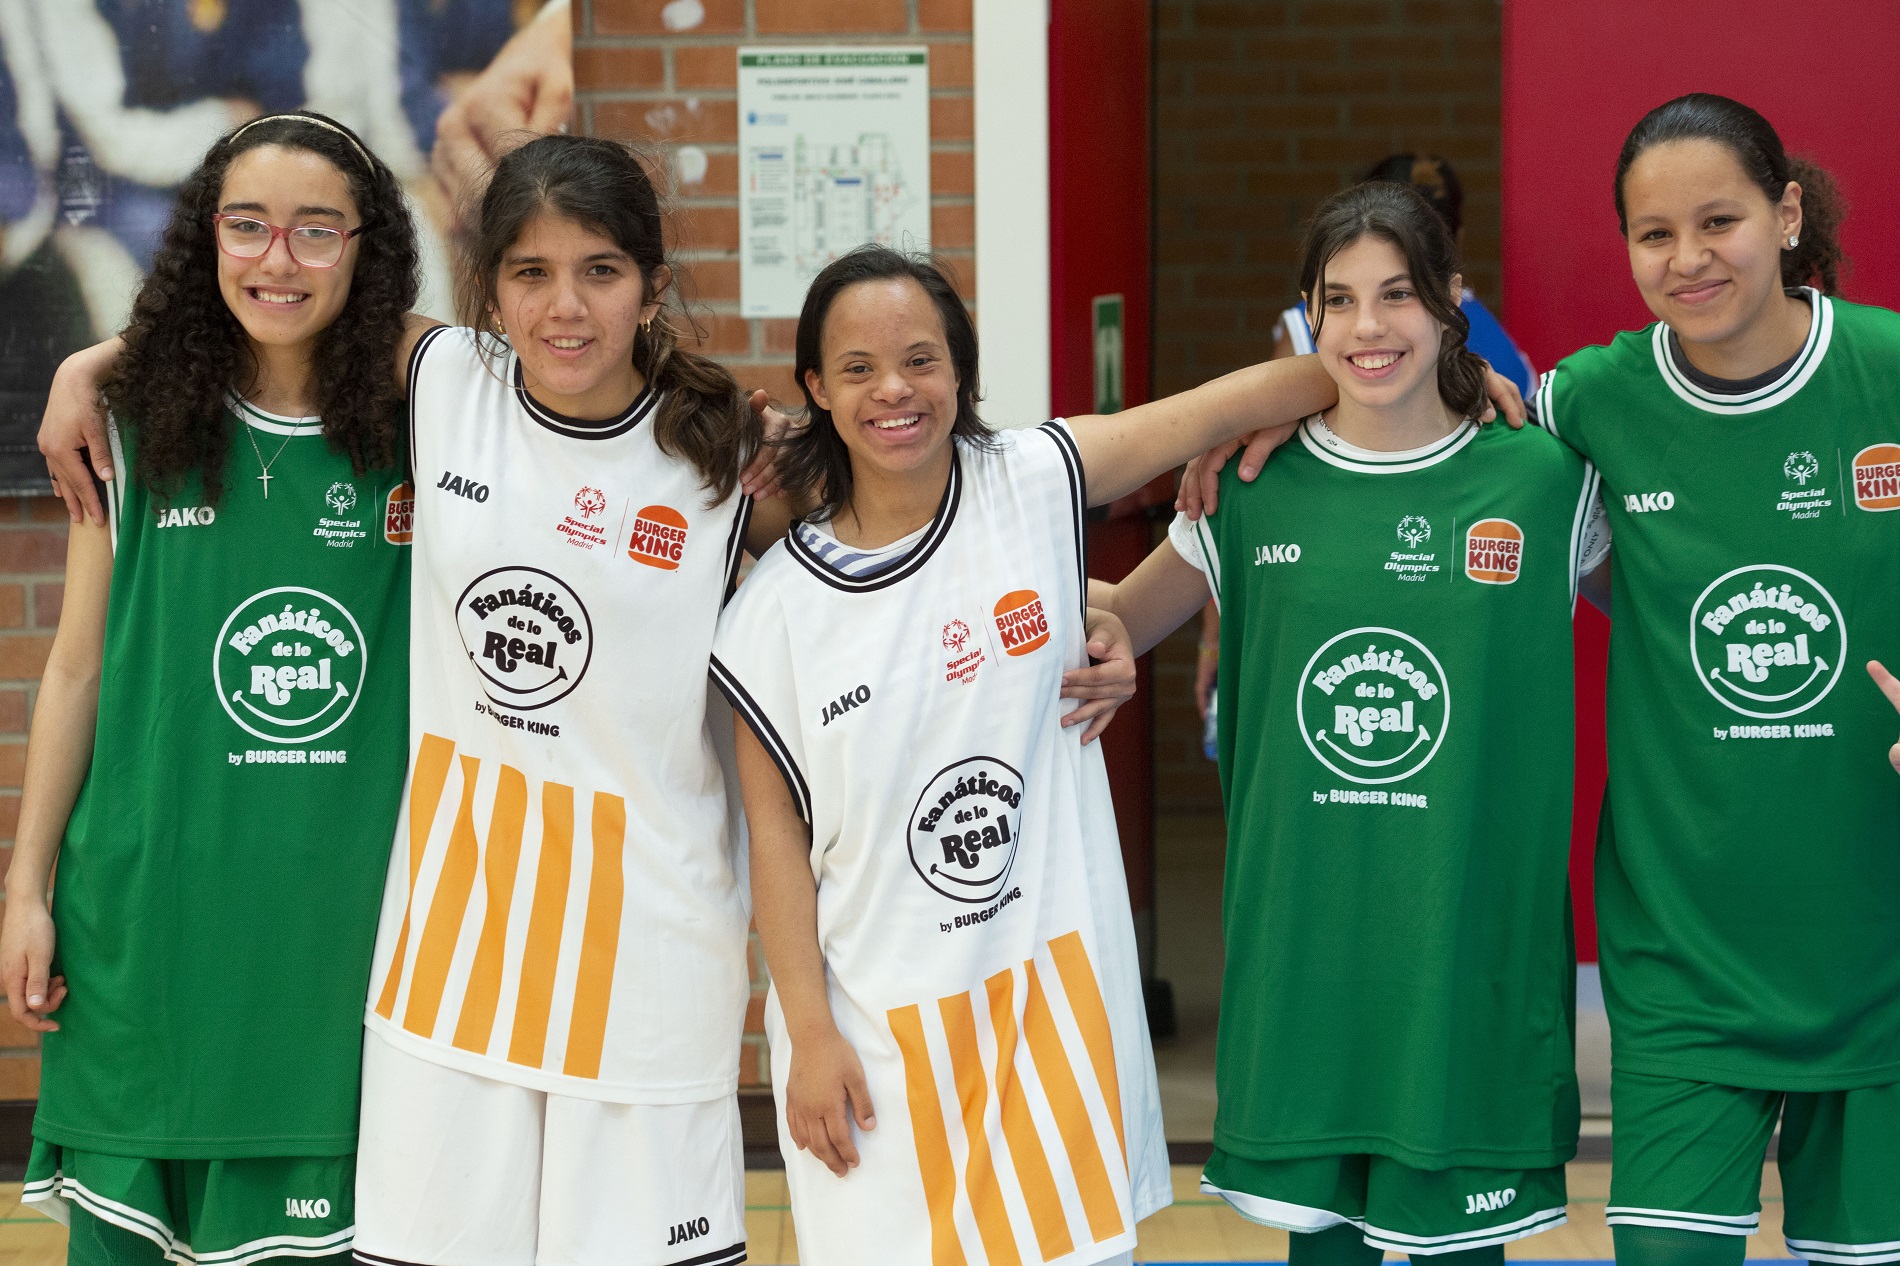 La Liga está organizada por Special Olympics Madrid y la Fundación Niqui con el patrocinio de Burger King y la Colaboración del Ayuntamiento de Alcobendas.